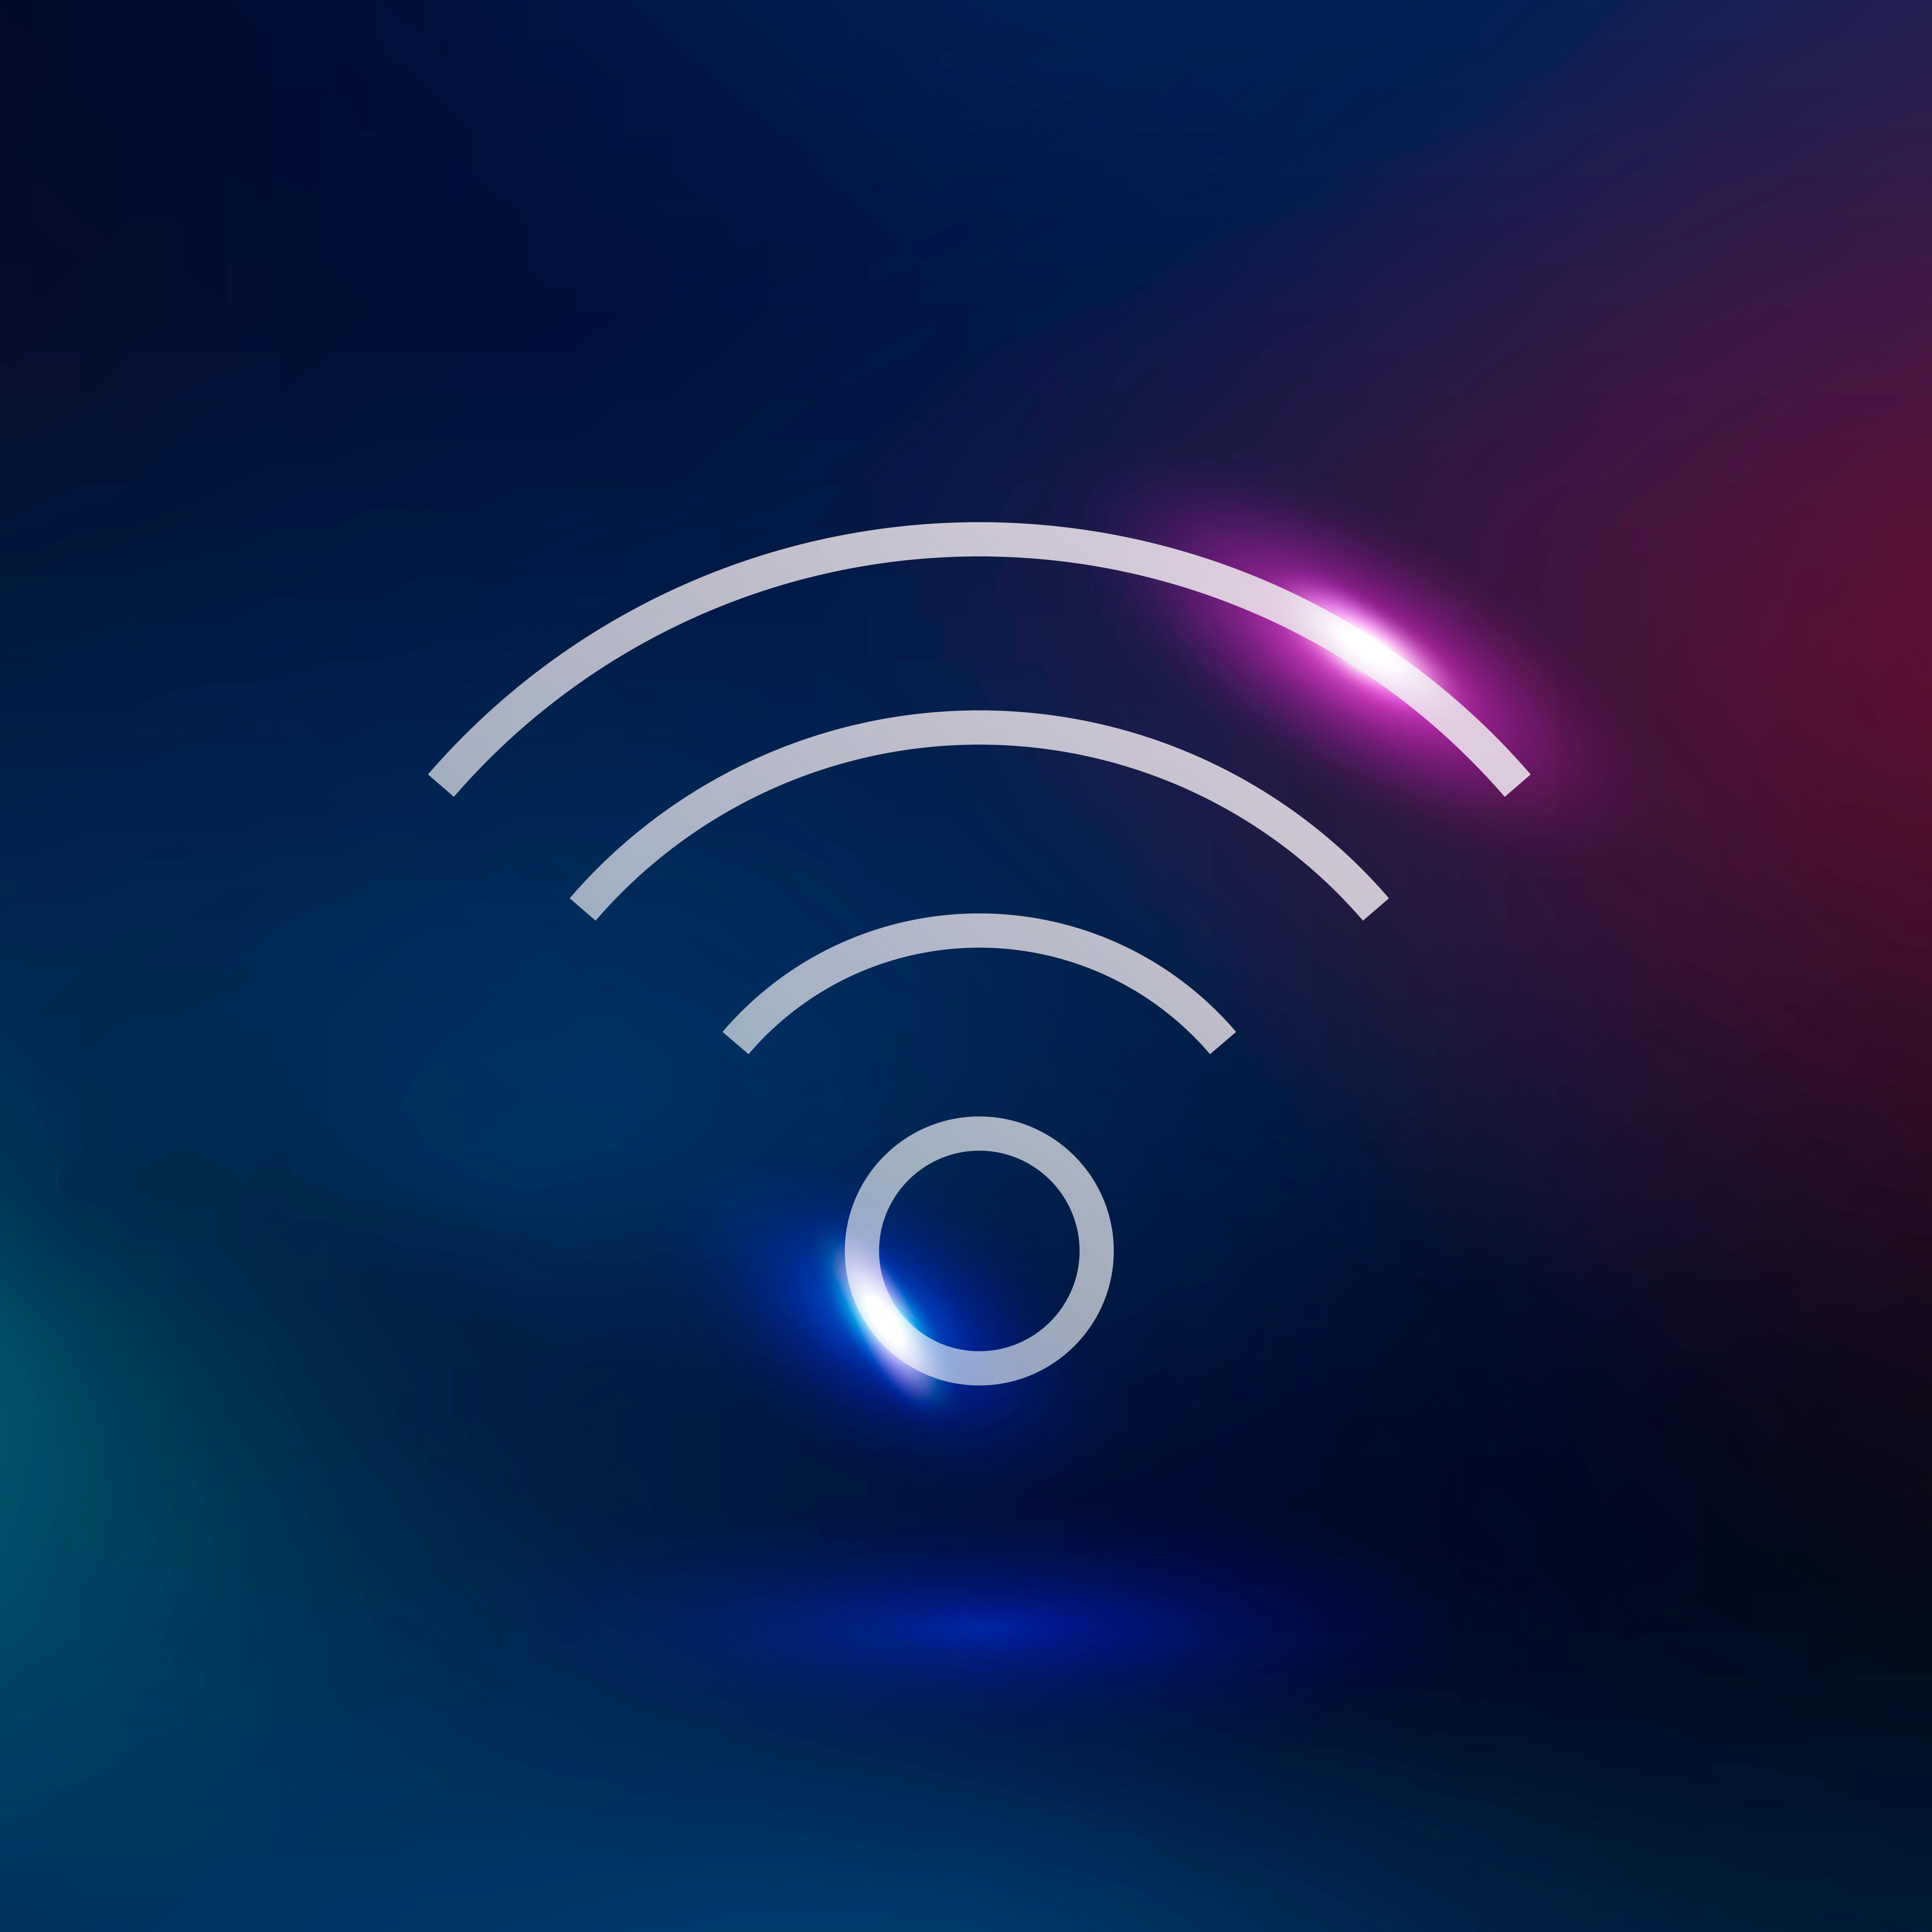 Kablosuz İnternet: Evde ve Ofiste Hızlı ve Kolay Bağlantı